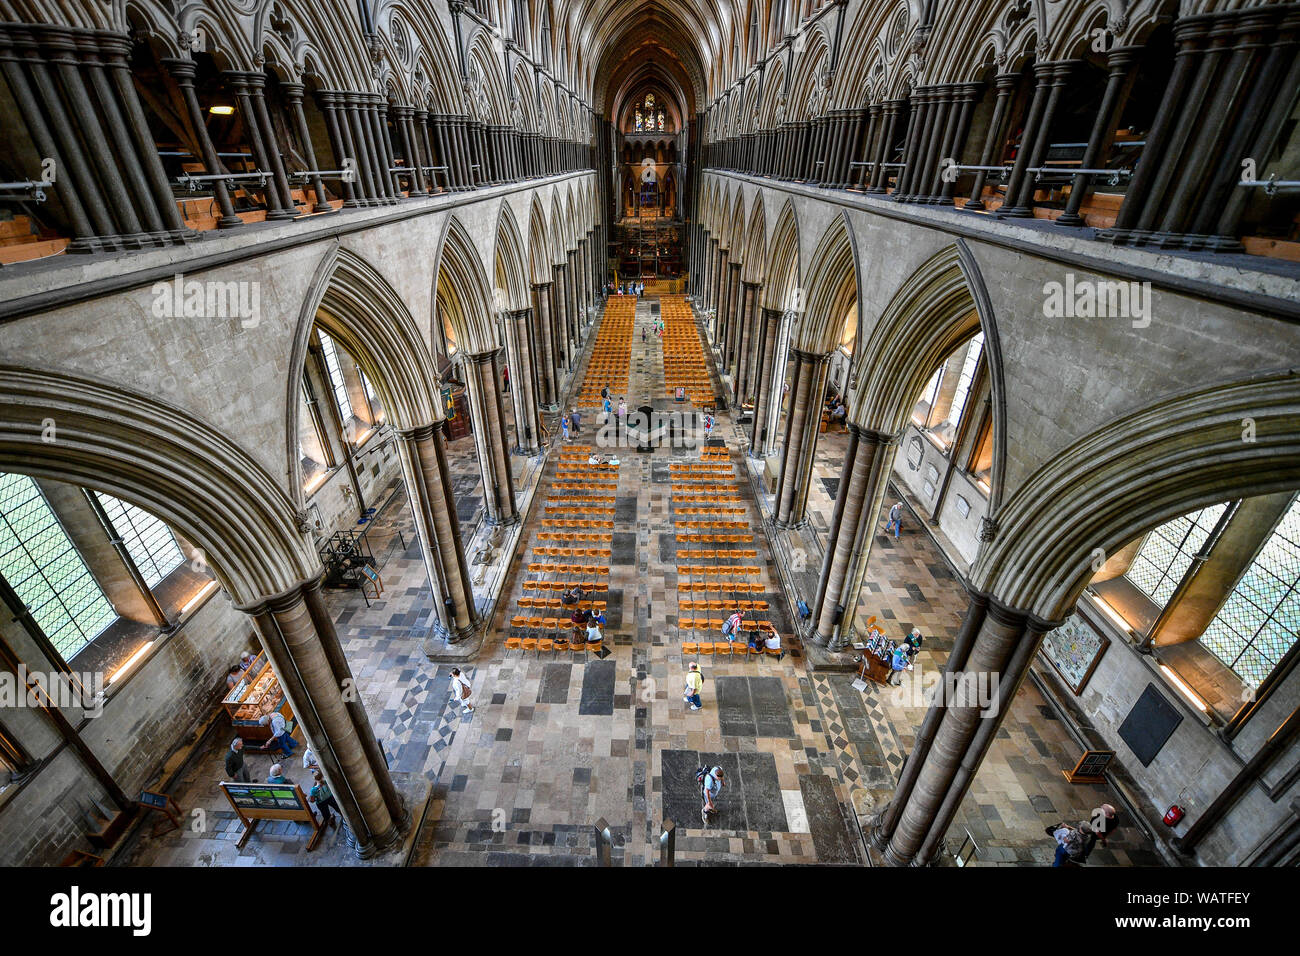 Ein Blick in das Innere der Suche entlang der Kirchenschiff in der Kathedrale von Salisbury Turm Tour, wo die Besucher auf der Basis der 123 Meter hohe Turm geführt werden, Klettern 332 hauptsächlich Spirale Schritte, durch die gewölbten Dach Platz, vorbei an mittelalterlichen Glasmalereien und über das Innenleben der Kathedrale aus dem 13. Jahrhundert. Stockfoto